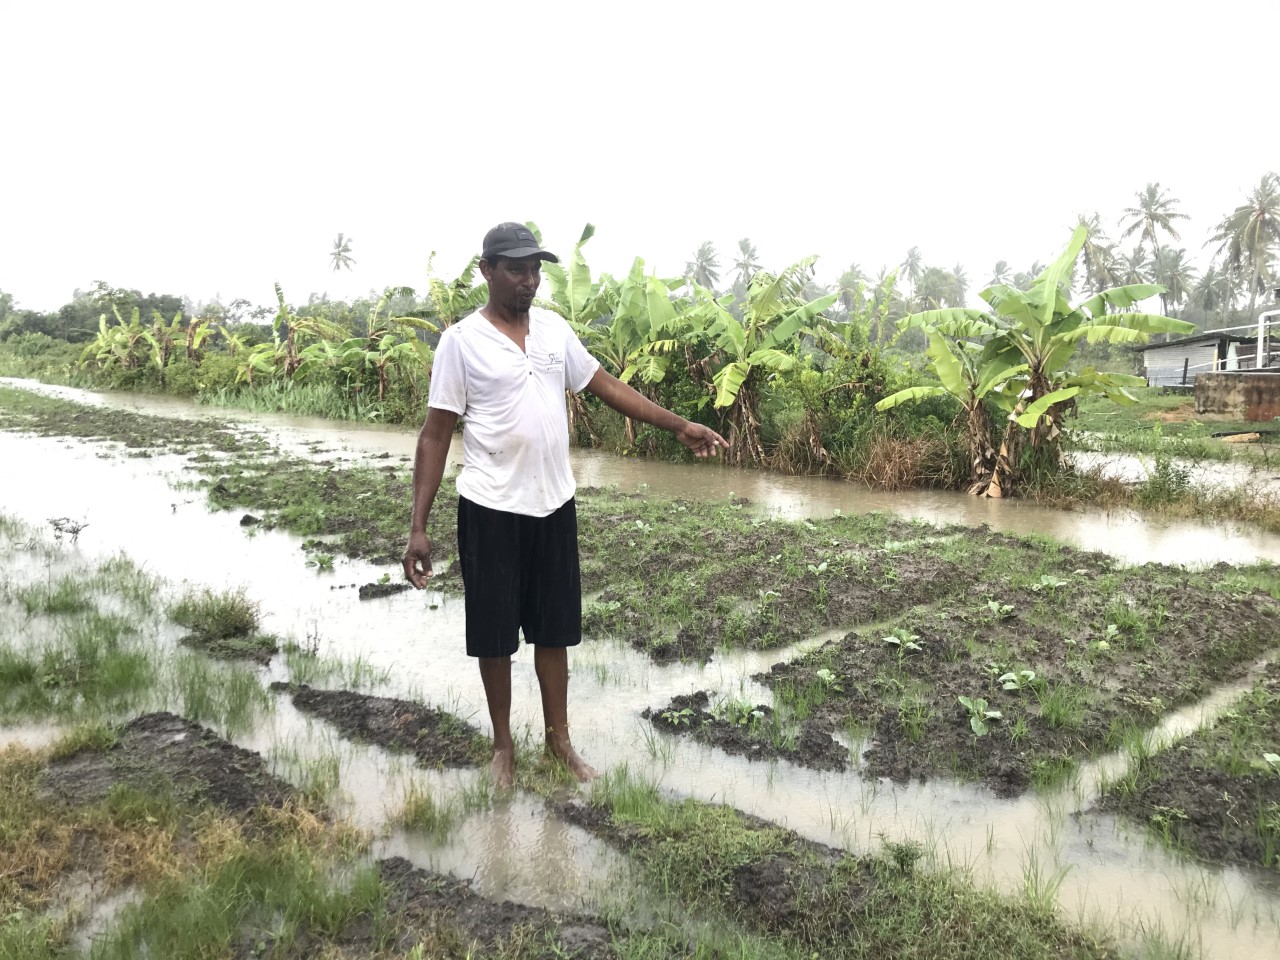 Jagdesh Jaddunauth showing part of his garden that is under water